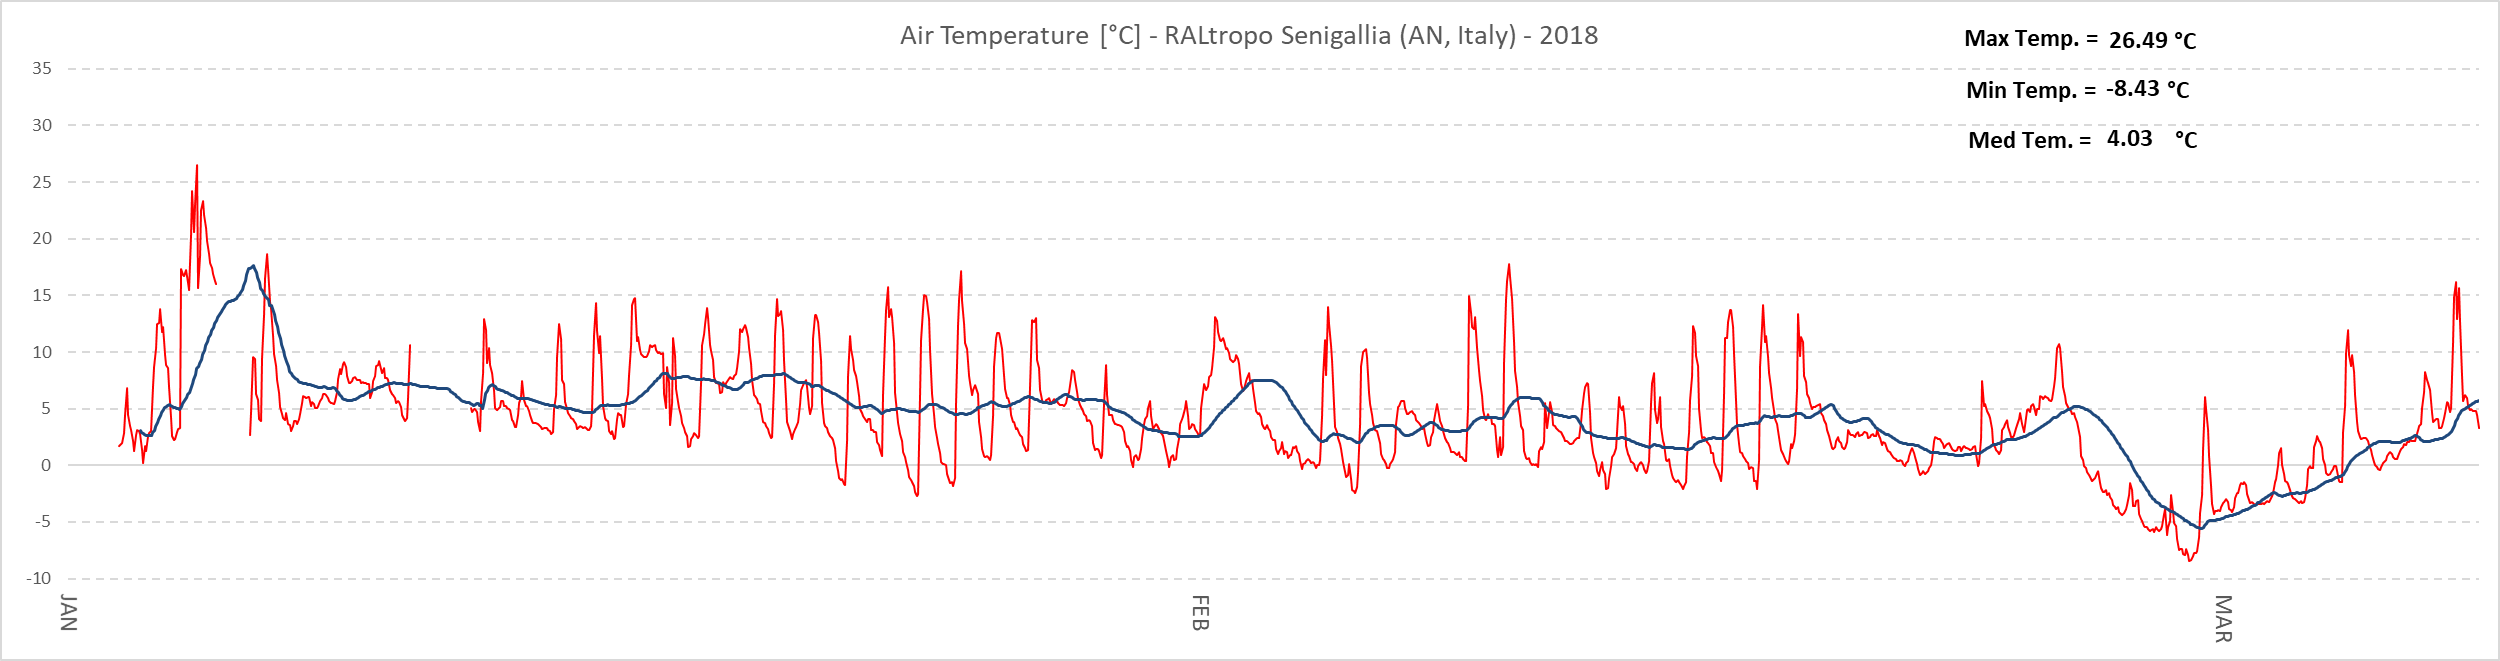 Escursioni termiche giornaliere (traccia di colore rosso) e valore medio della temperatura esterna (traccia di colore blu) dal 1 Gennaio al 8 Marzo 2018.